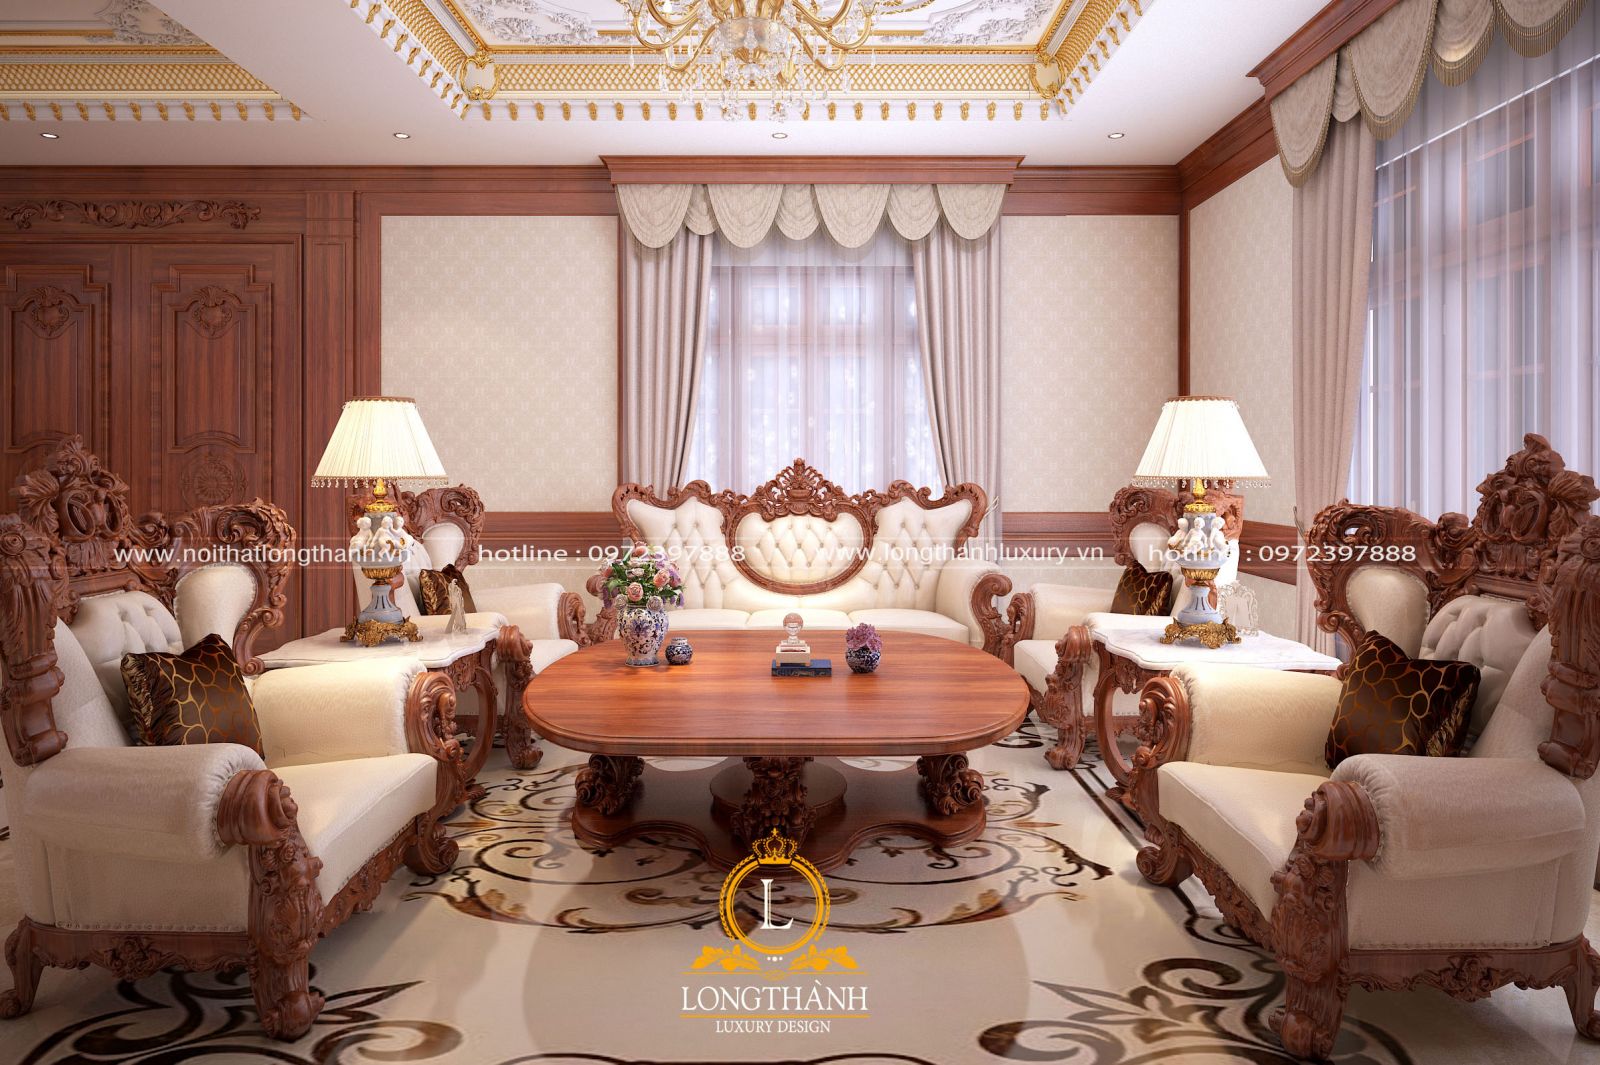 Bộ sofa phòng khách bằng gỗ đẹp theo thiết kế tân cổ điển